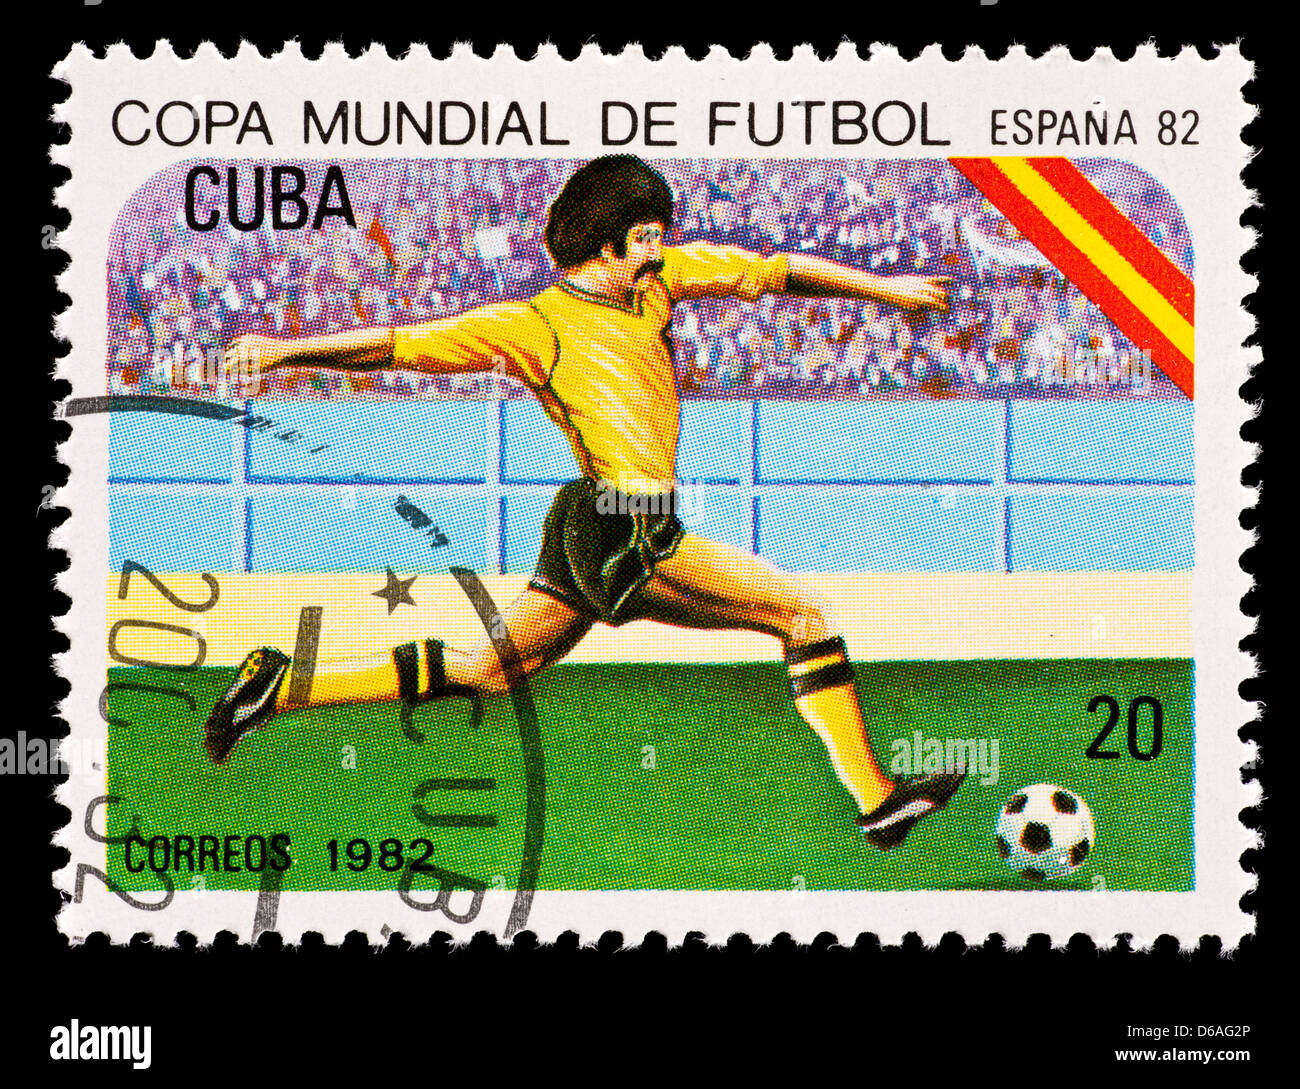 Timbre-poste de Cuba représentant un joueur de football, émis pour la Coupe du Monde 1982 en Espagne. Banque D'Images